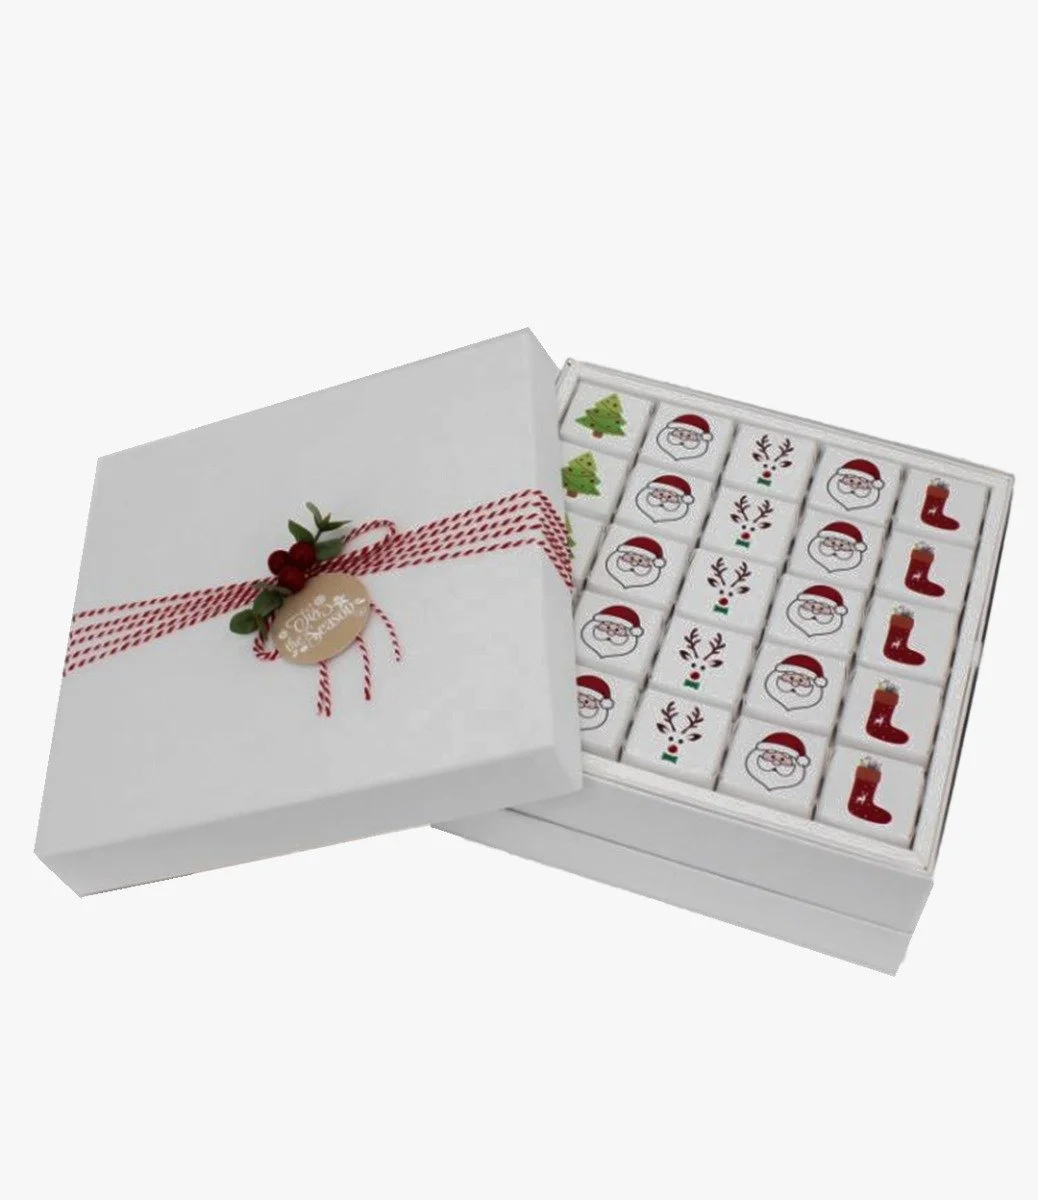 صندوق شوكولاتة الكريسماس الفاخر من لو شوكولاتيير